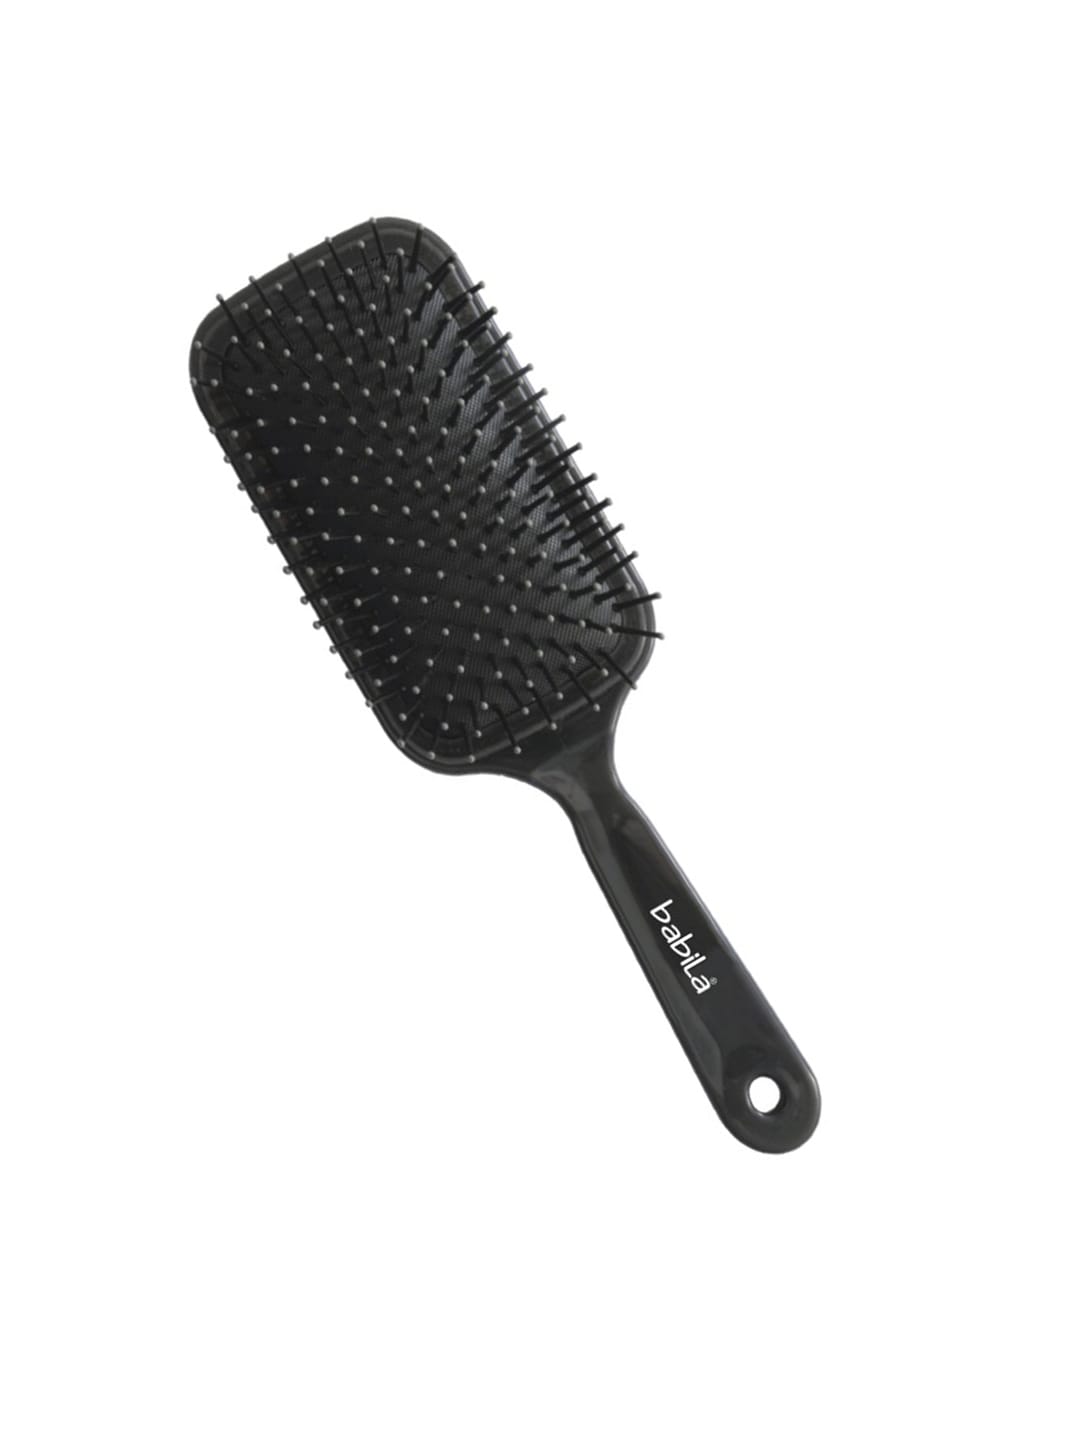 Babila Black Paddle Hair Brush Price in India